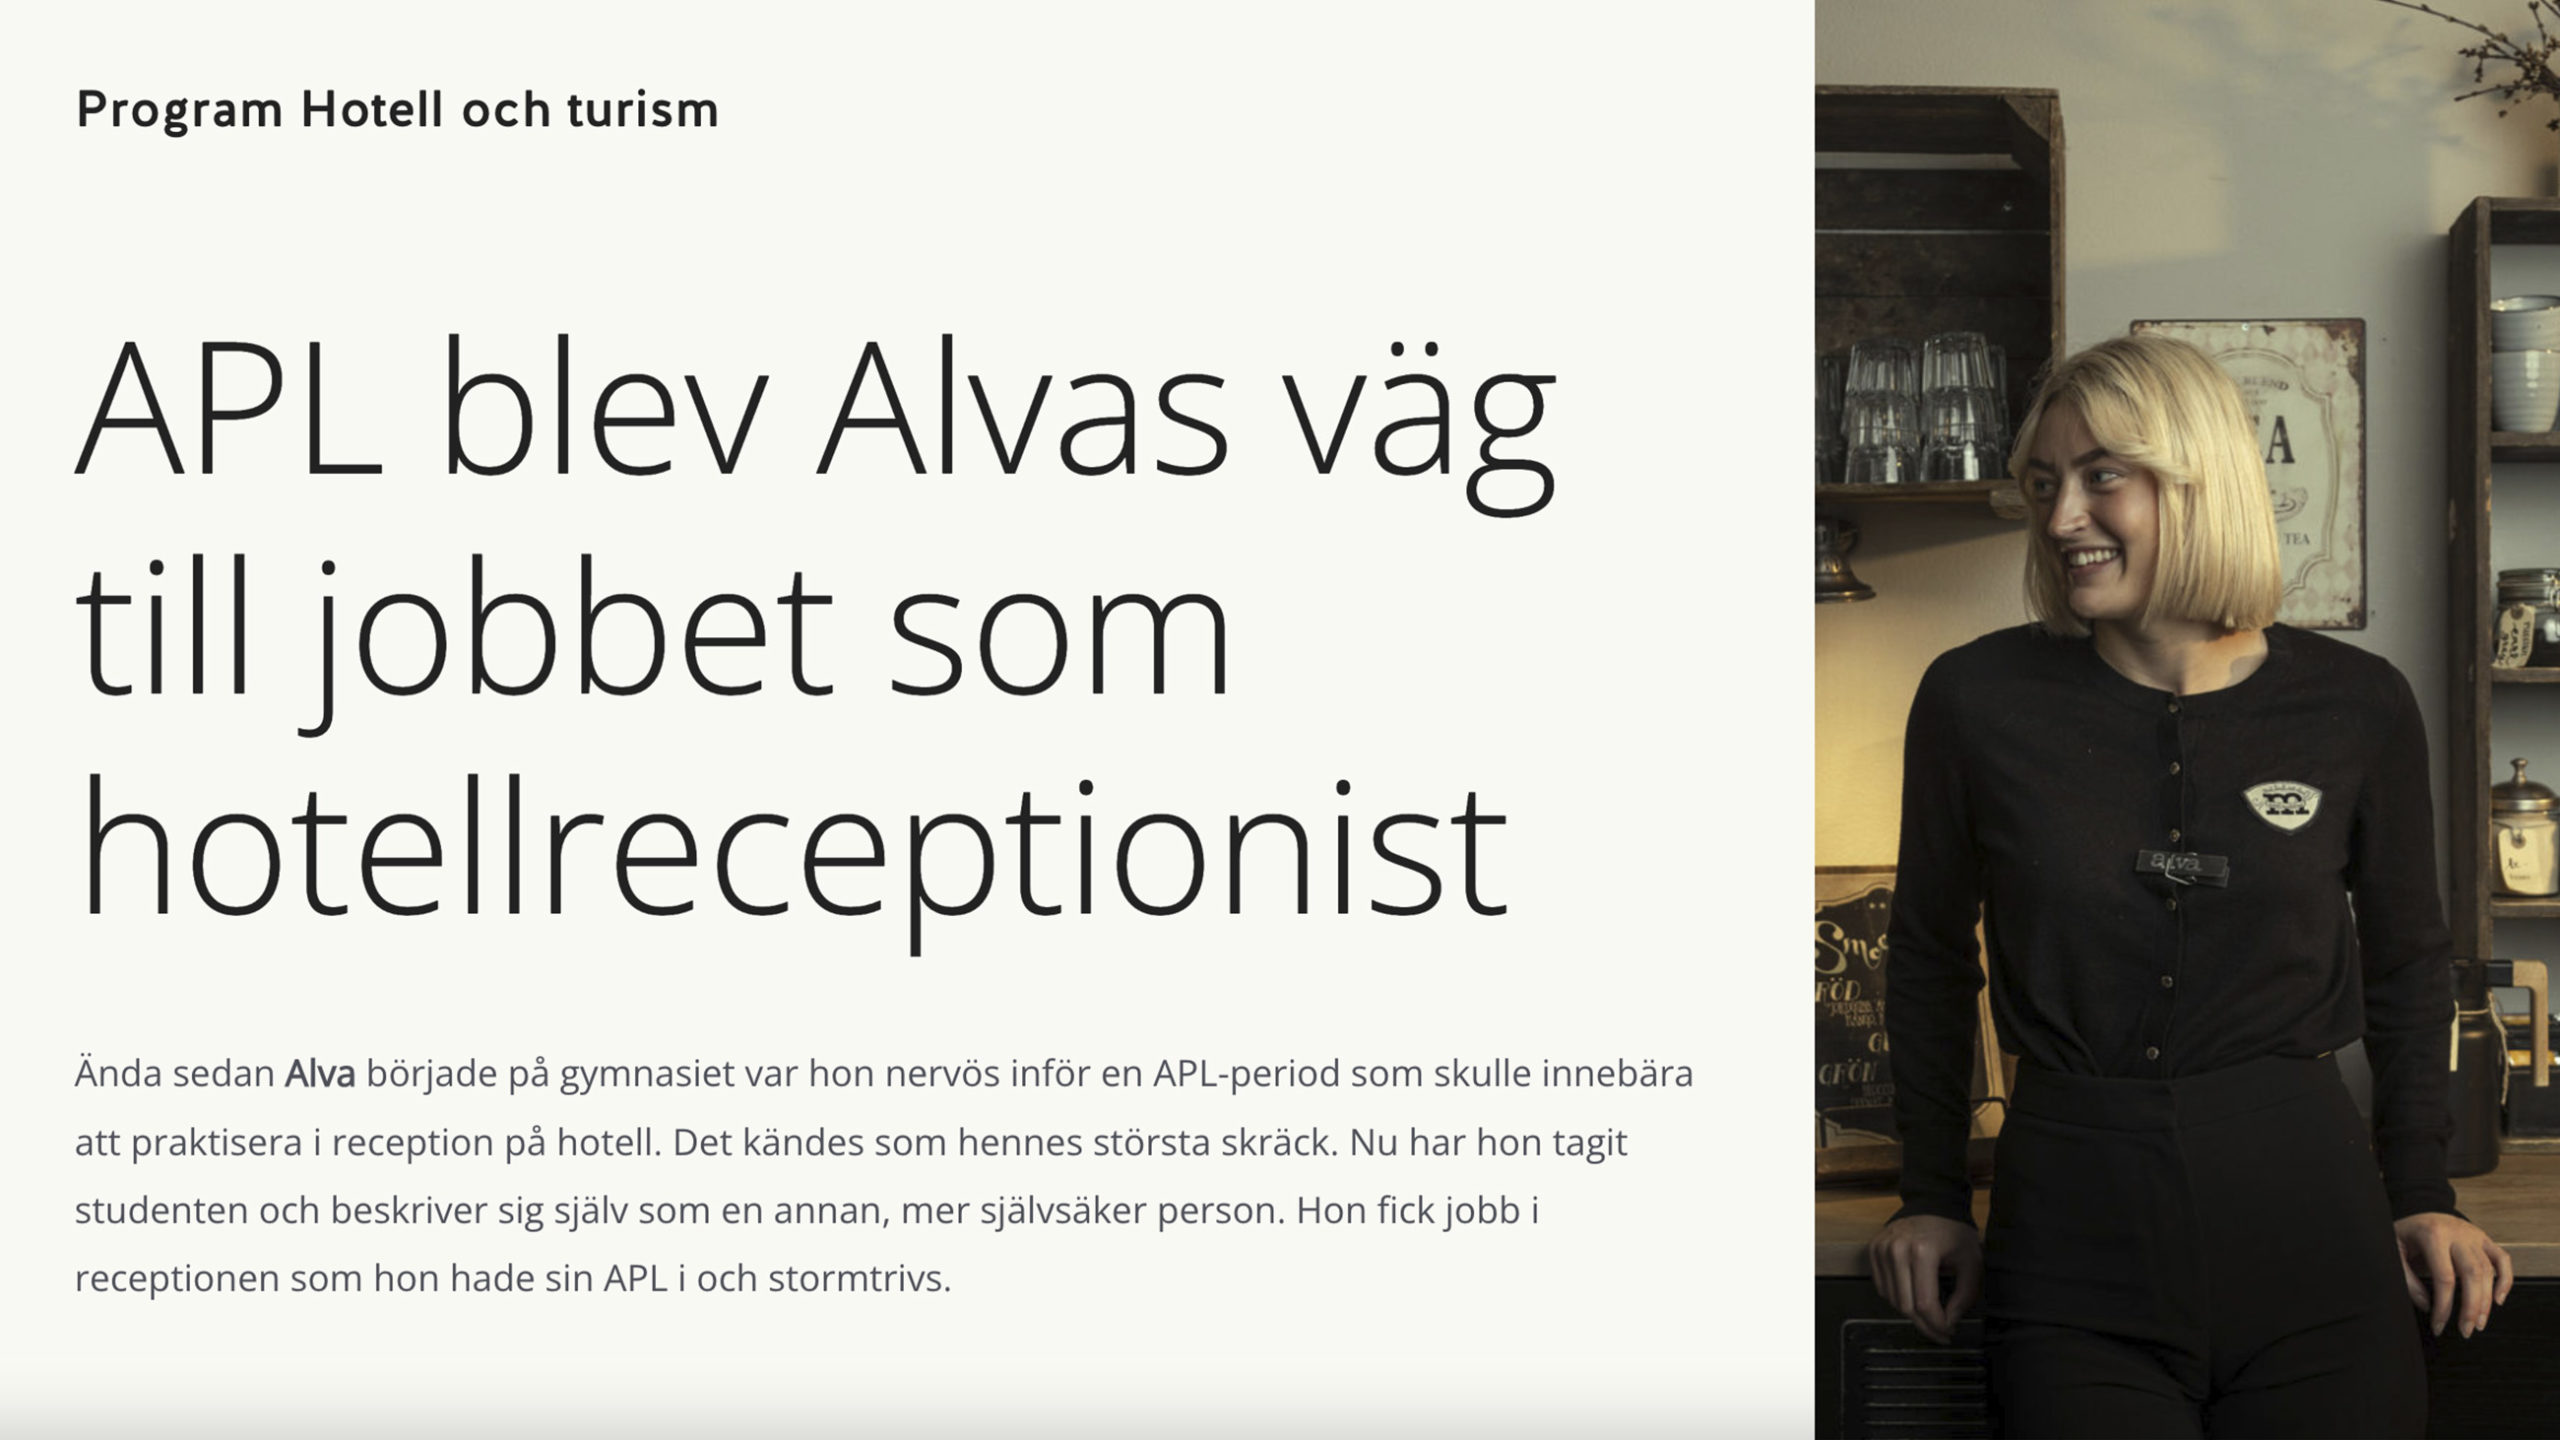 APL blev Alvas väg till hotellreceptionist